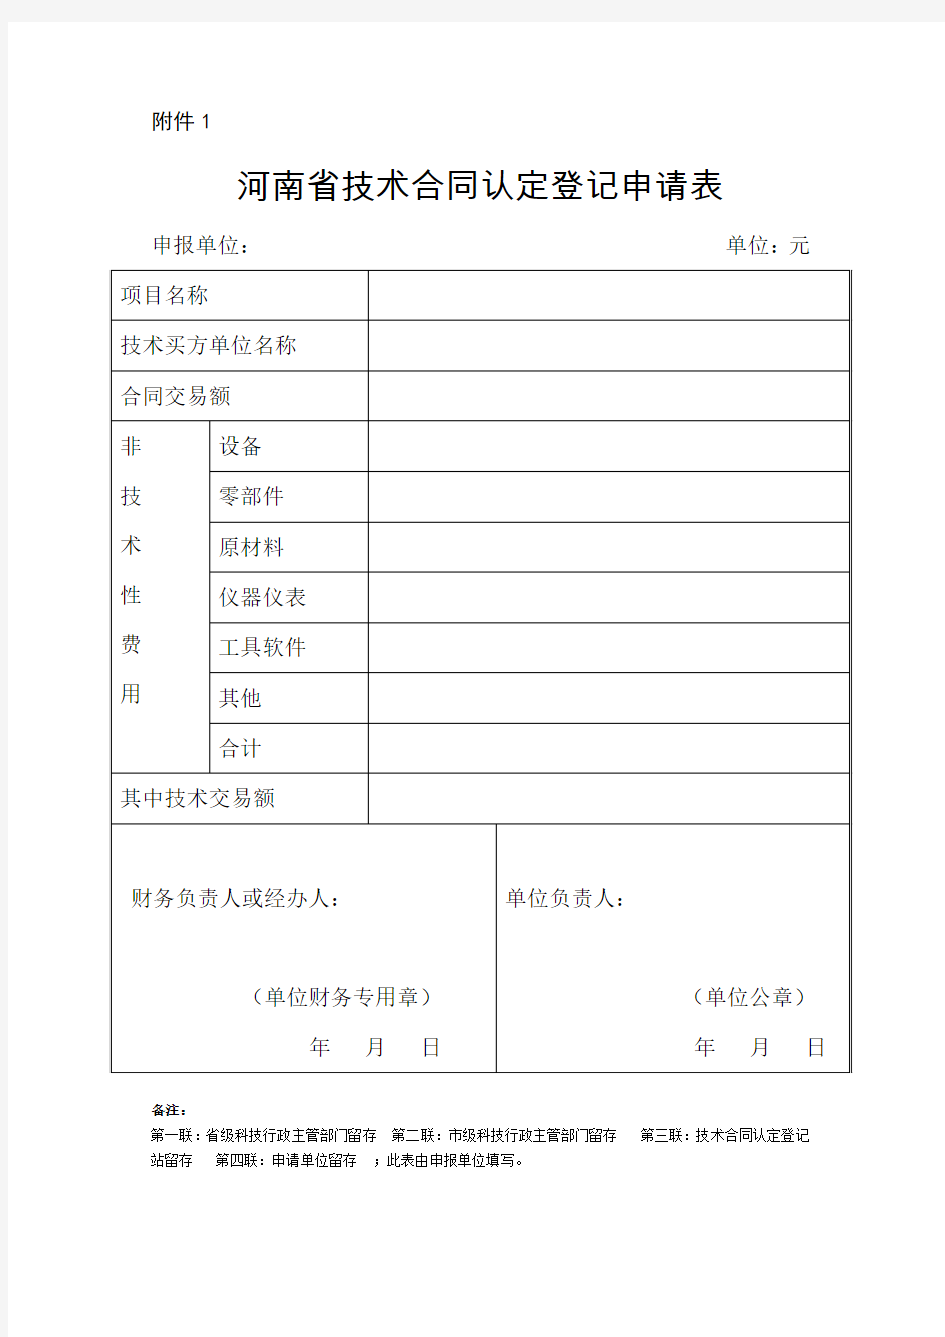 (河南省国家税务局公告[2014]13号)附件1(中税网)